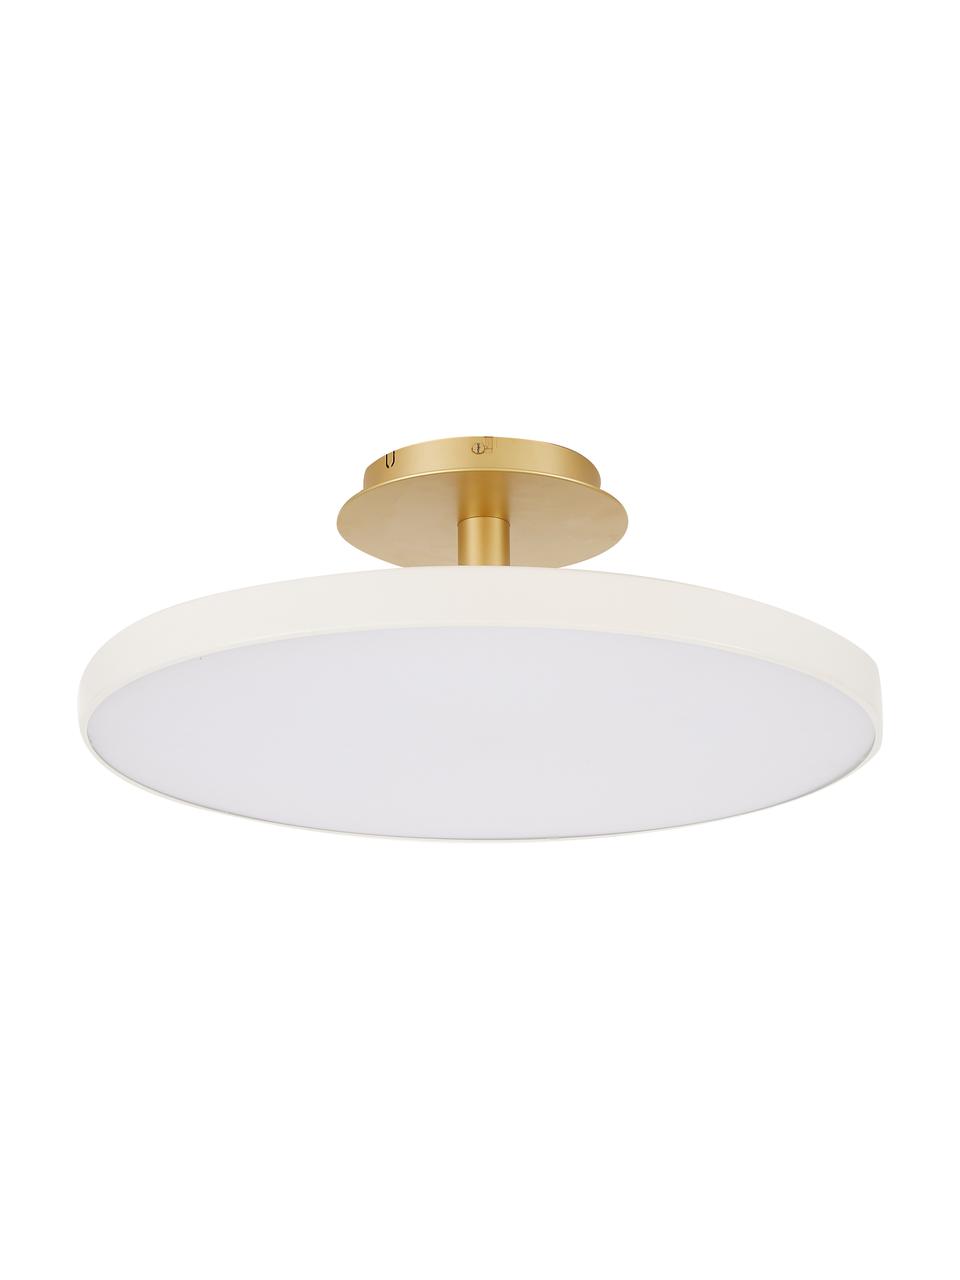 Plafonnier LED design Asteria, Blanc crème, couleur dorée